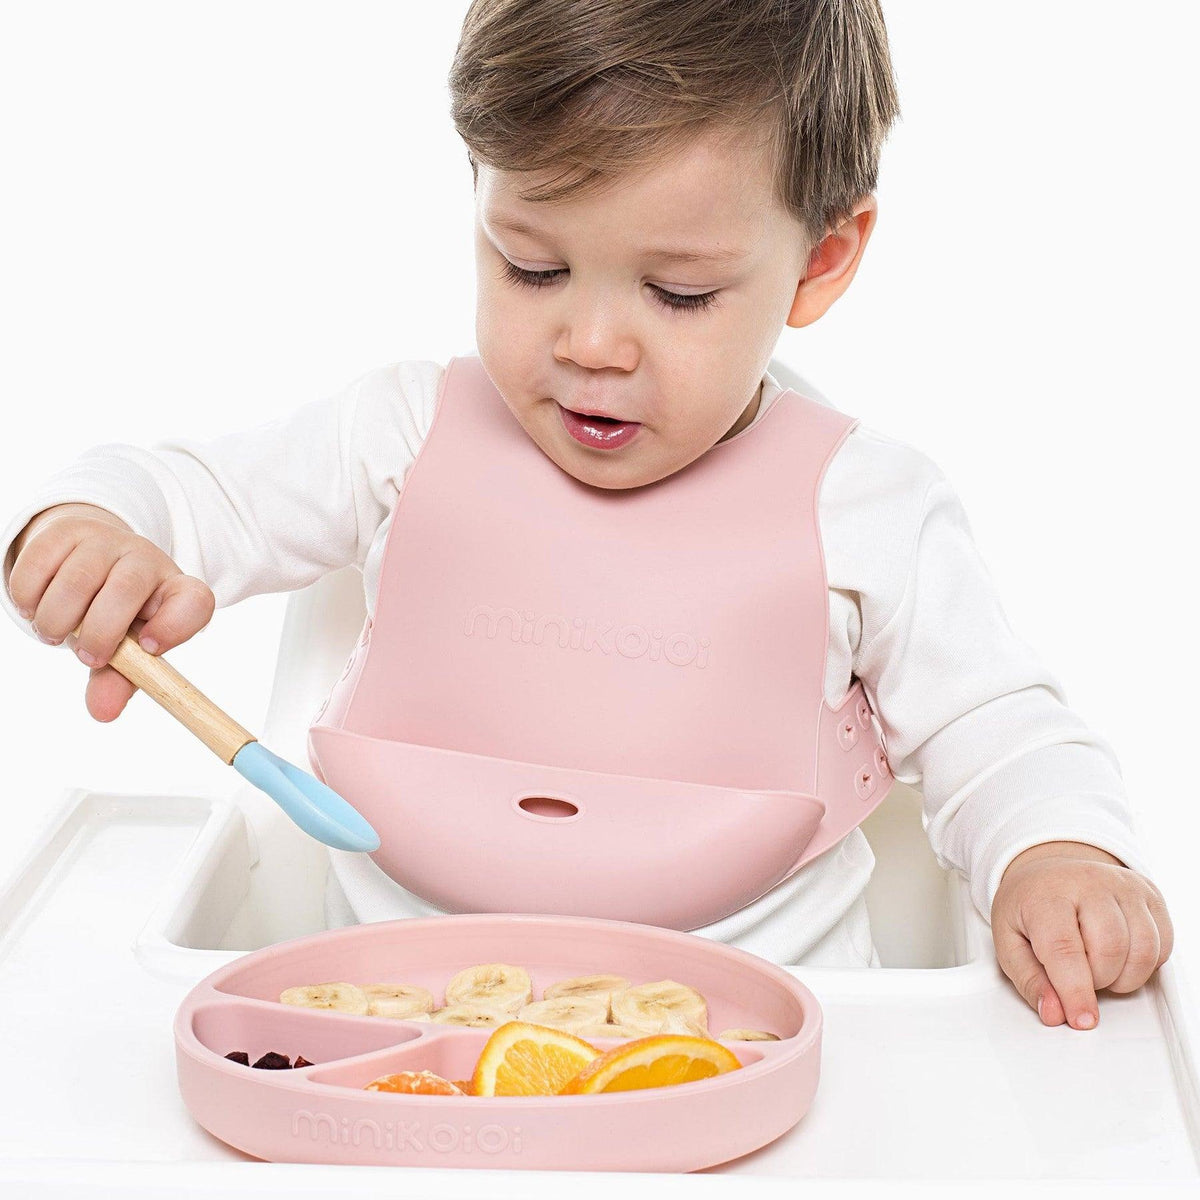 Ensemble d'alimentation pour bébé: triple assiette, bavoir imprimé